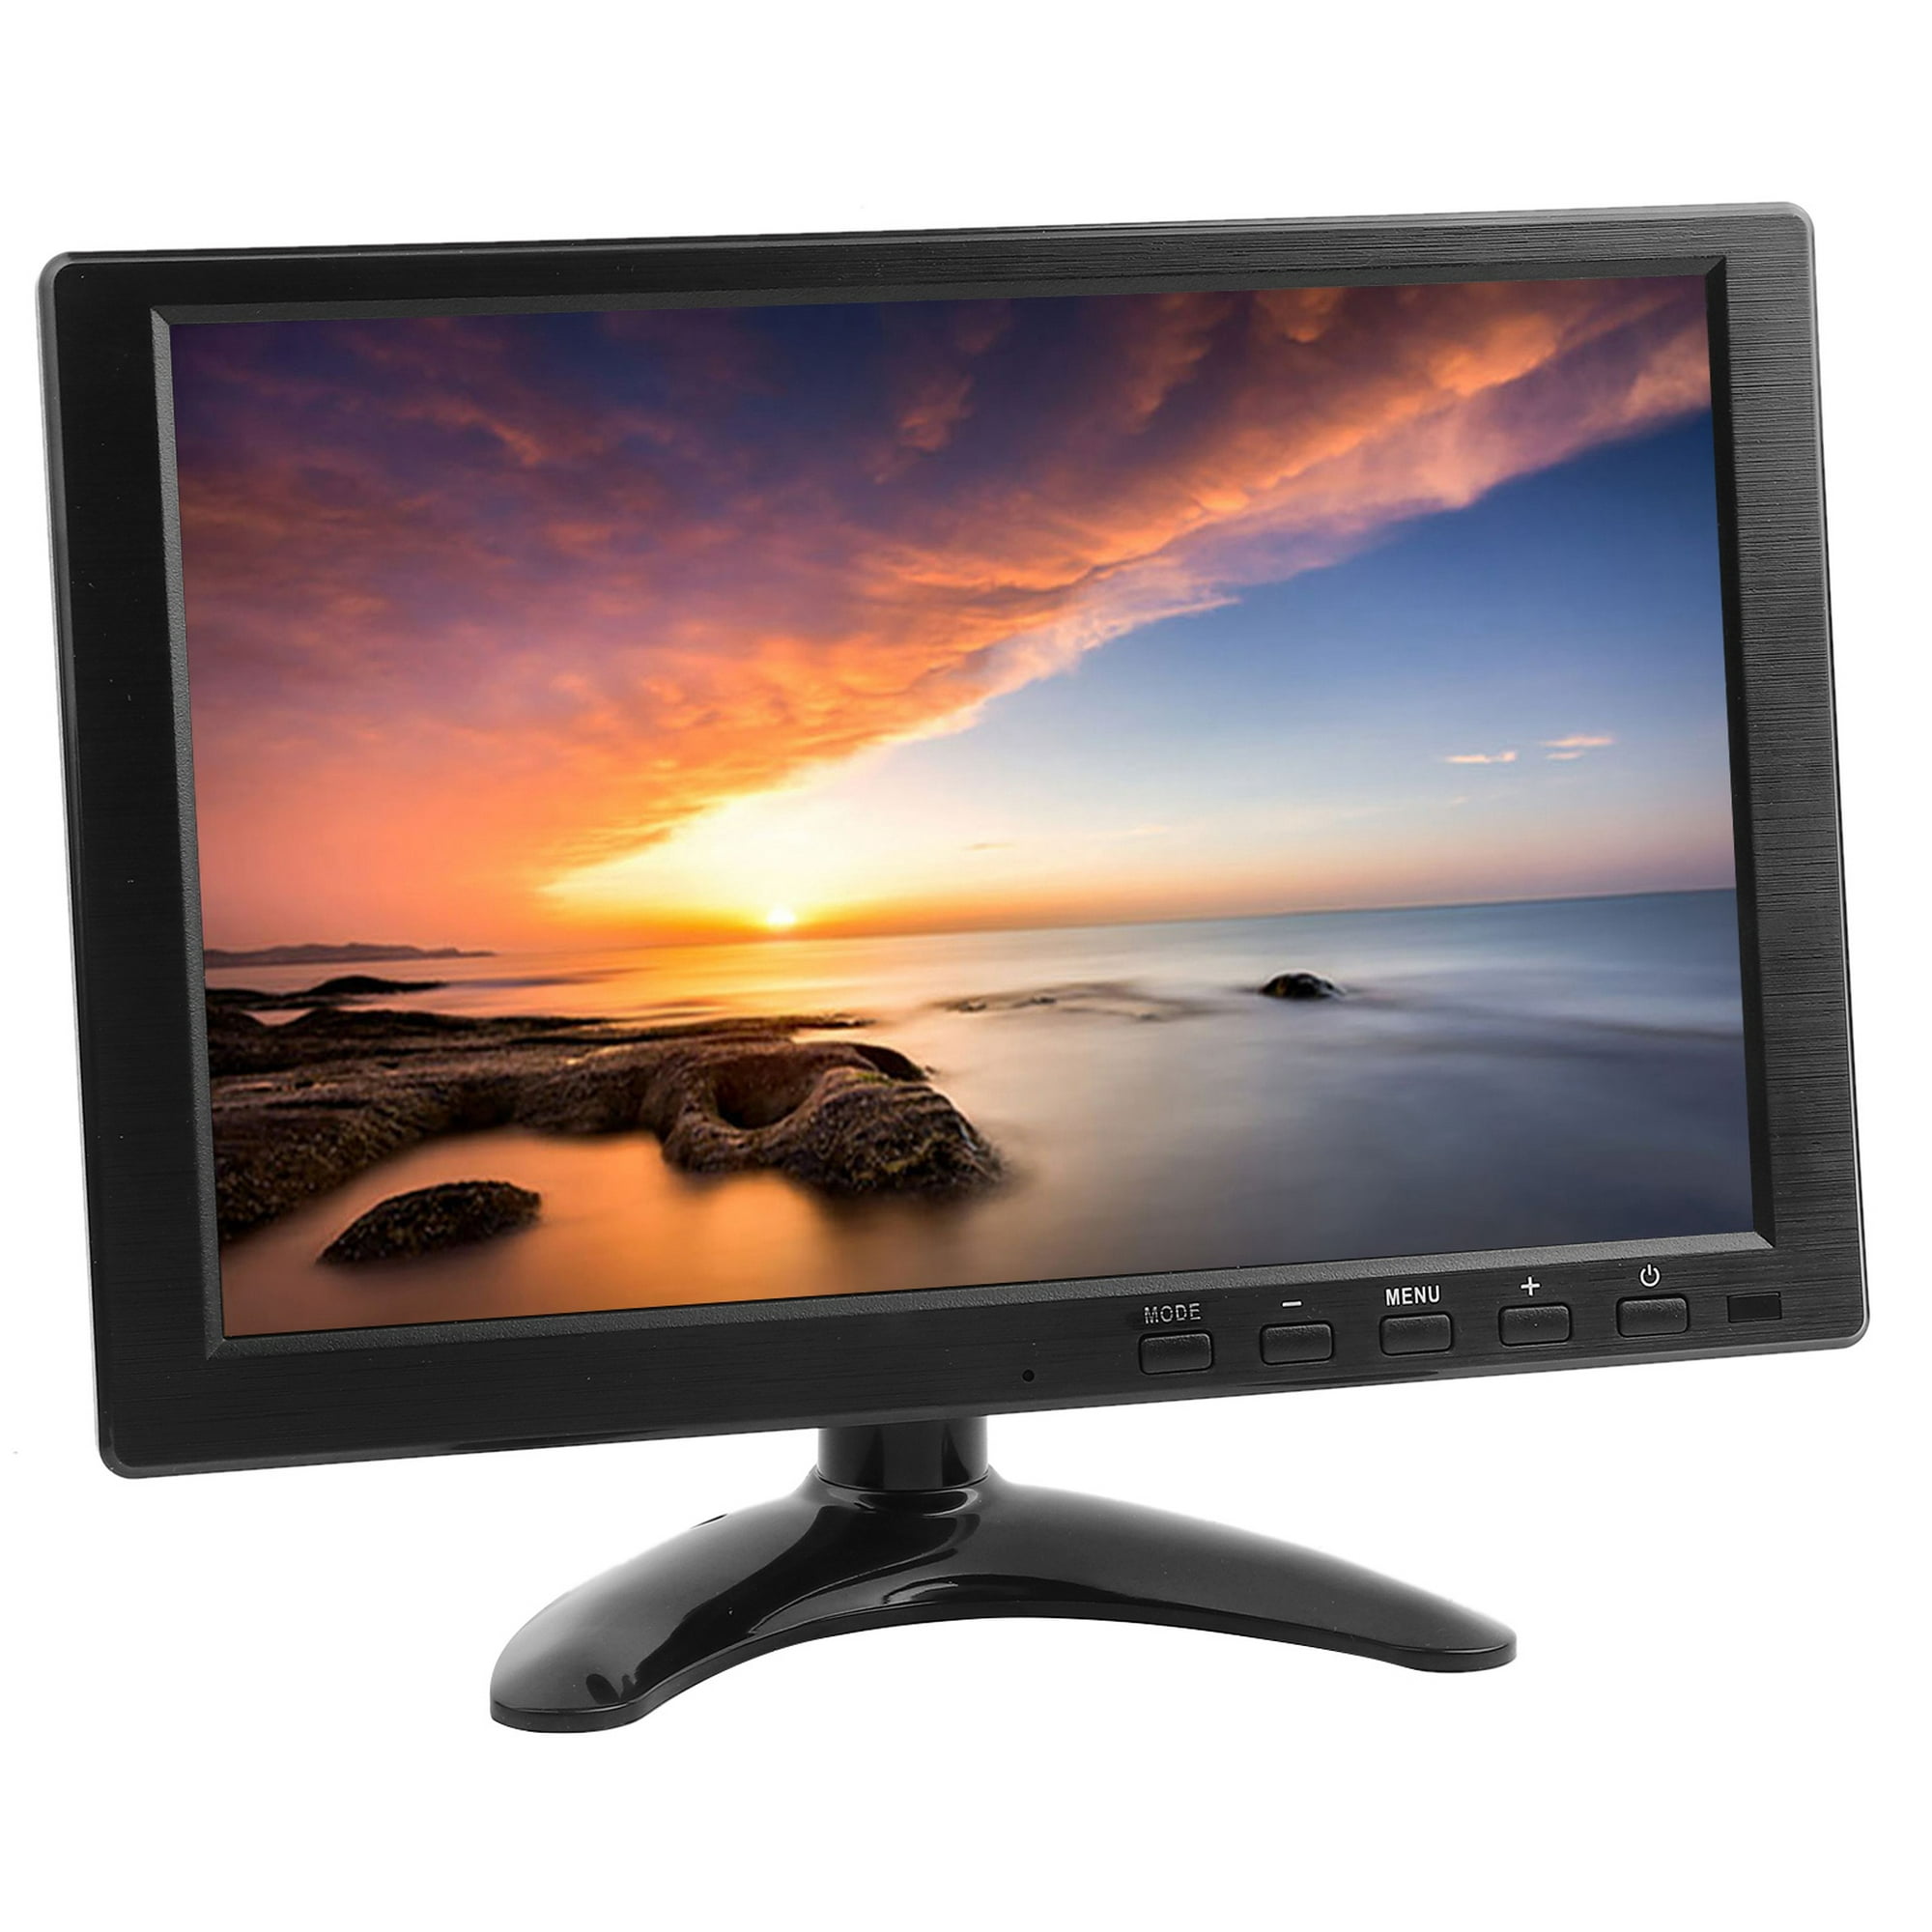  Monitor de computadora de 21.5 pulgadas, 16 x 9 1920 x 1080 TFT  LED HD 1080P pantalla de juegos a color con VGA, HDMI, AV, BNC, USB,  interfaz de entrada de